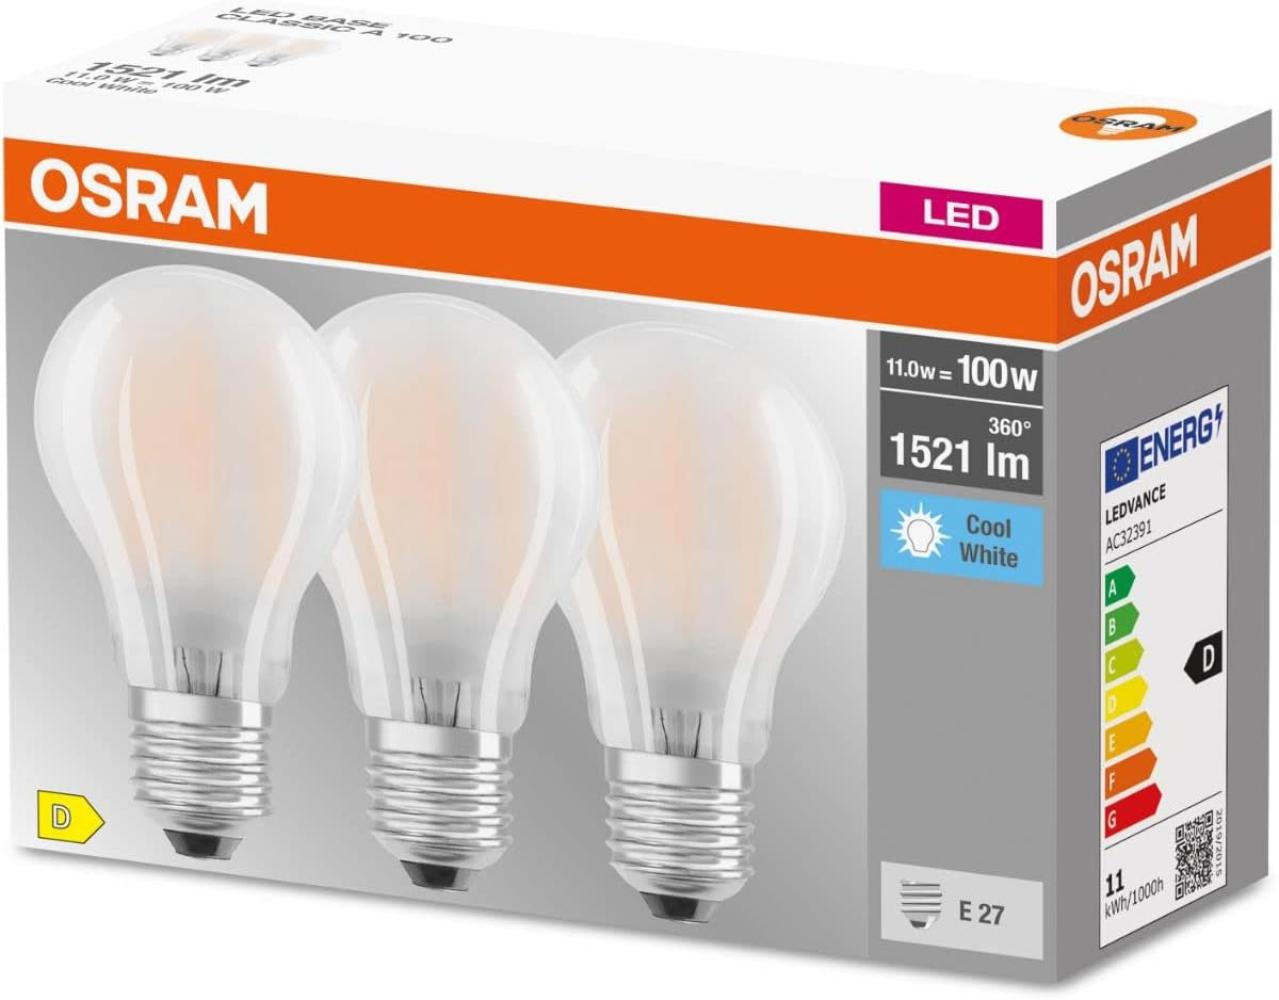 OSRAM LED BASE CLASSIC A Lampe matt (ex 100W) 11W / 4000K Kaltweiß E27 Bild 1